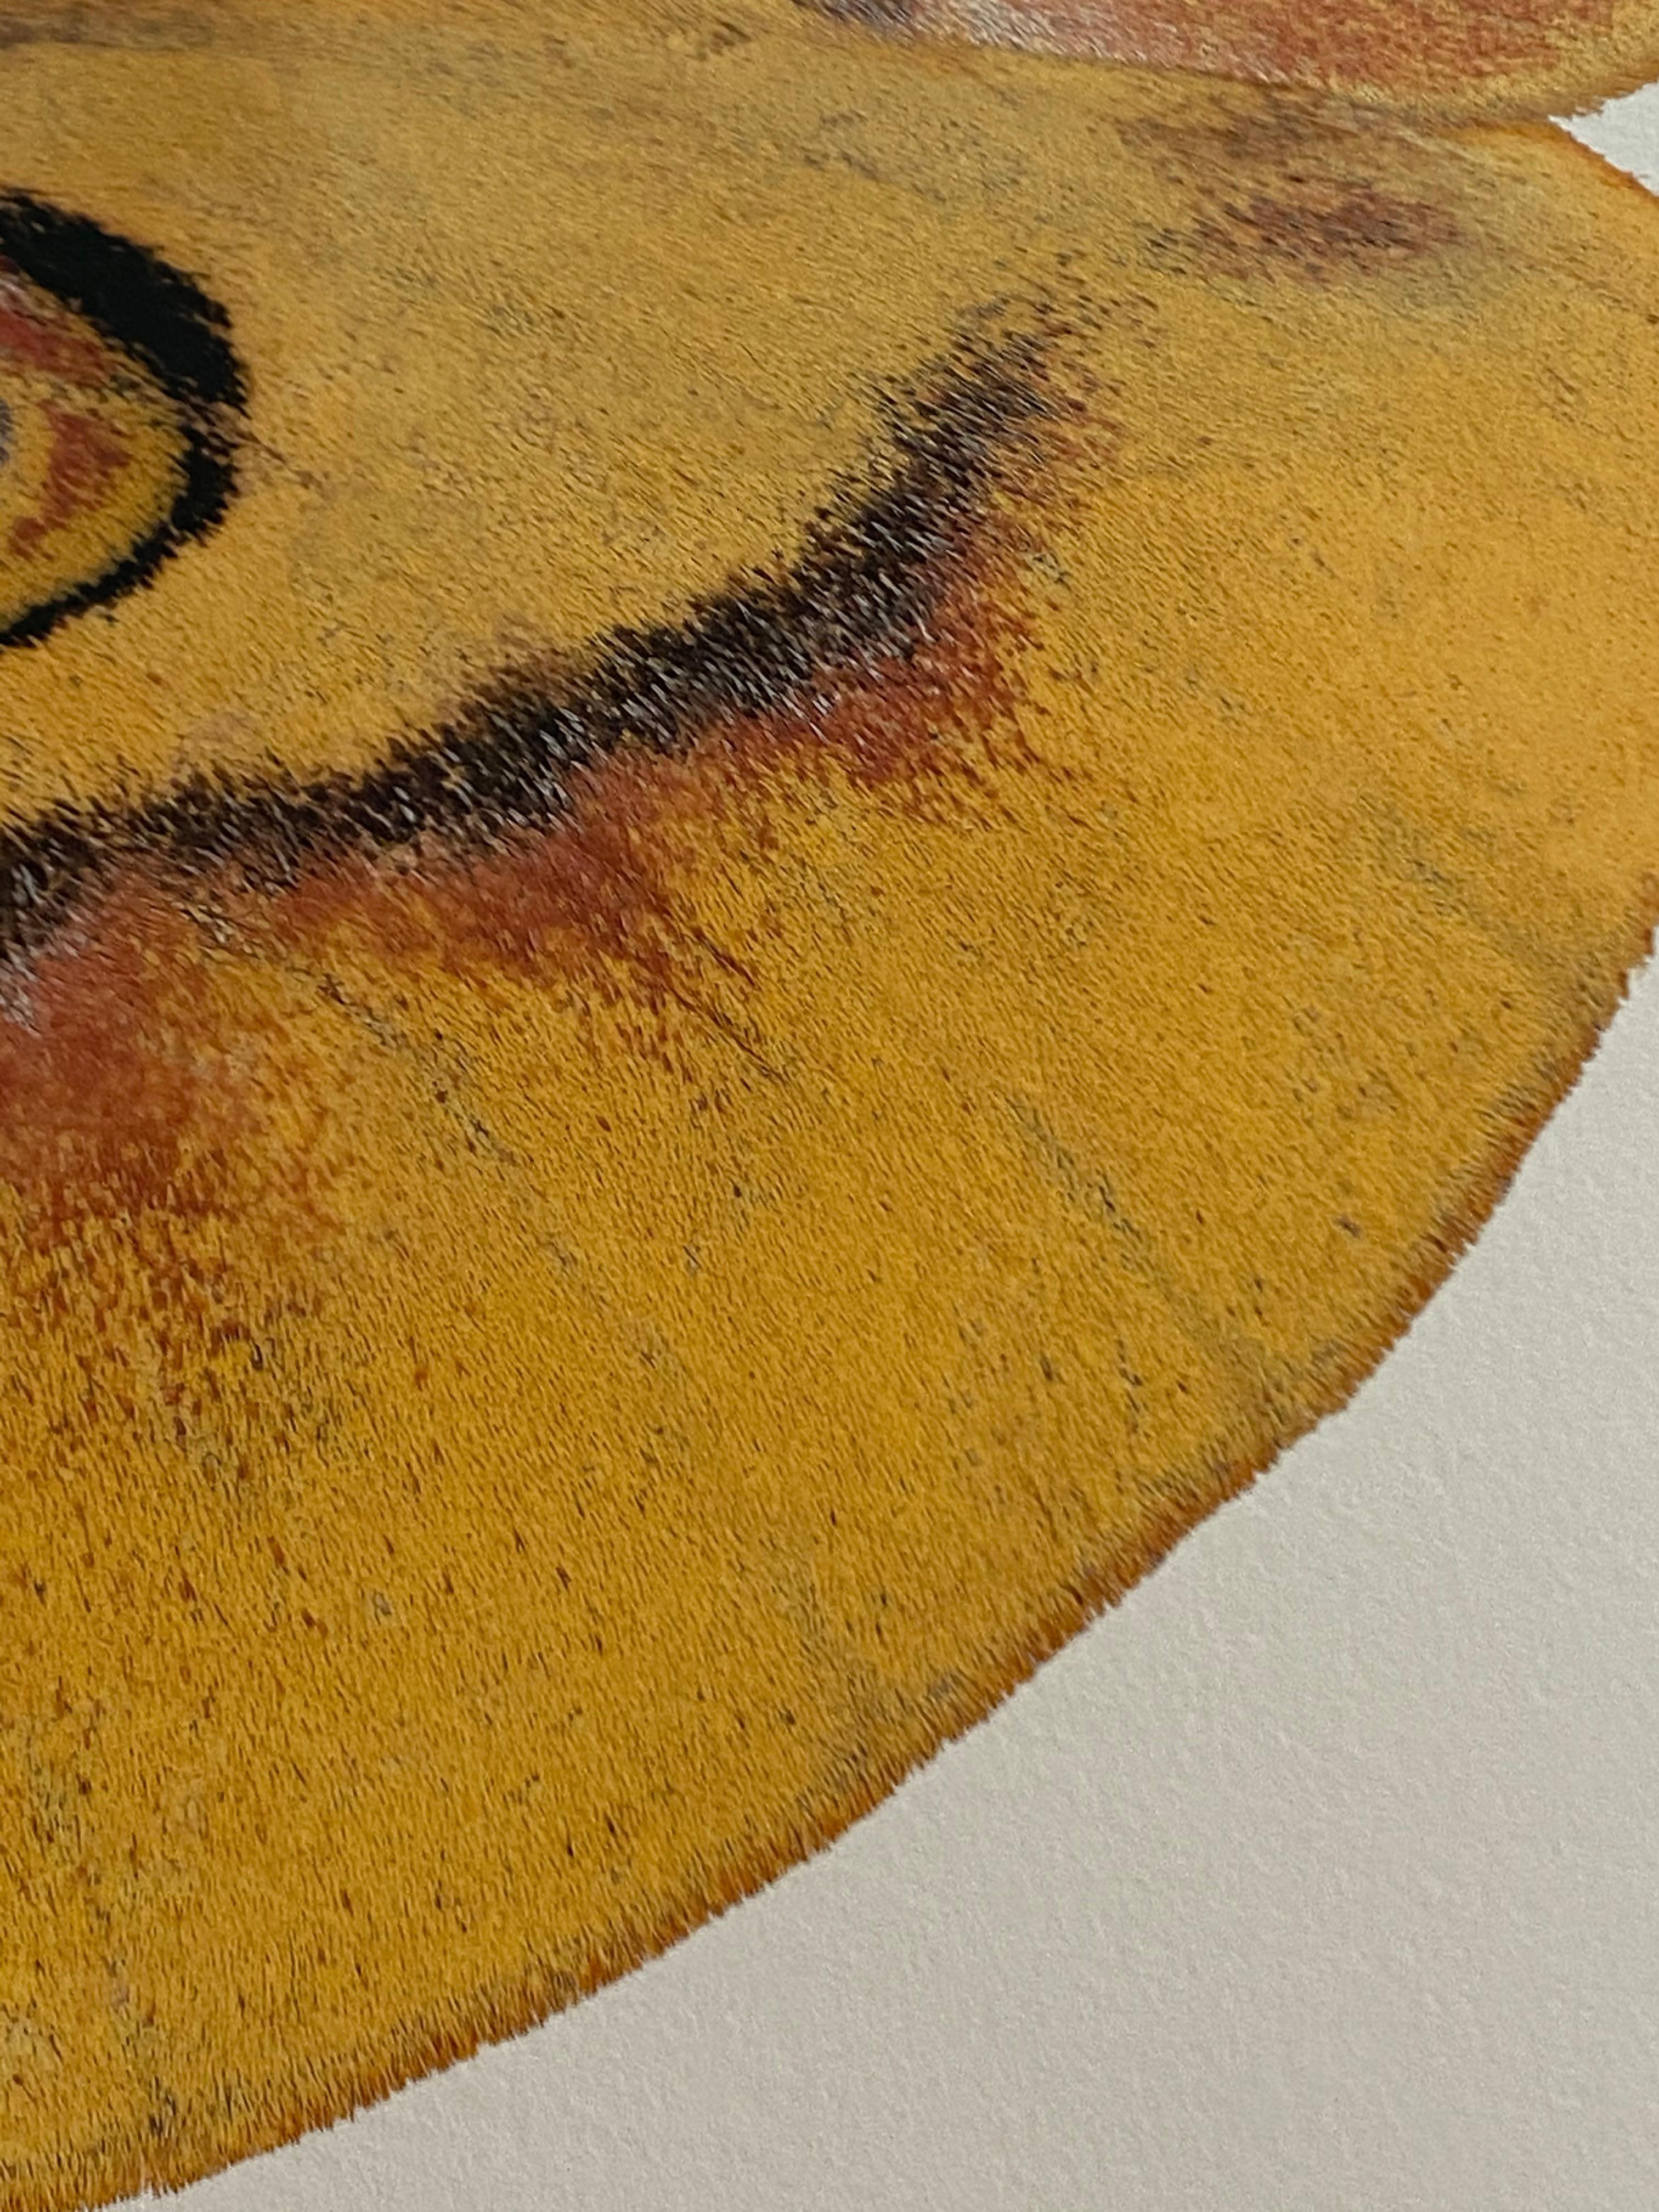 Dans cette impression pigmentaire d'archives hyper-détaillée sur papier aquarelle, un papillon de nuit jaune avec des marques marron clair et corail rougeâtre se détache de façon spectaculaire sur un fond blanc net et solide. 

Le prix indiqué est